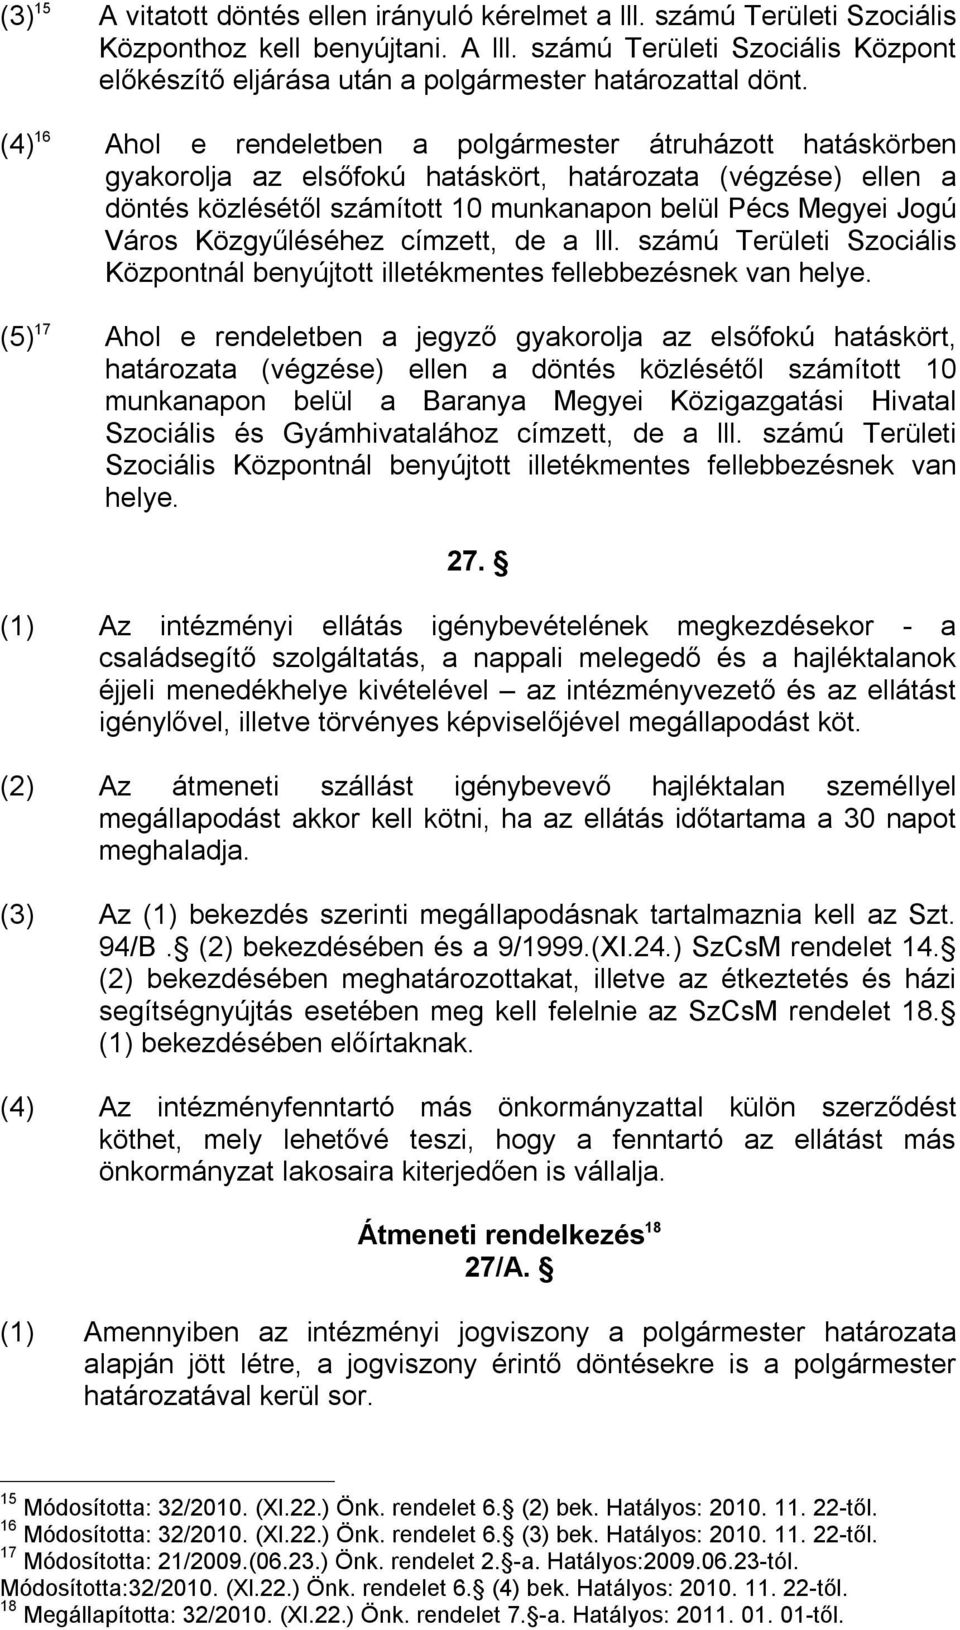 (4) 16 Ahol e rendeletben a polgármester átruházott hatáskörben gyakorolja az elsőfokú hatáskört, határozata (végzése) ellen a döntés közlésétől számított 10 munkanapon belül Pécs Megyei Jogú Város